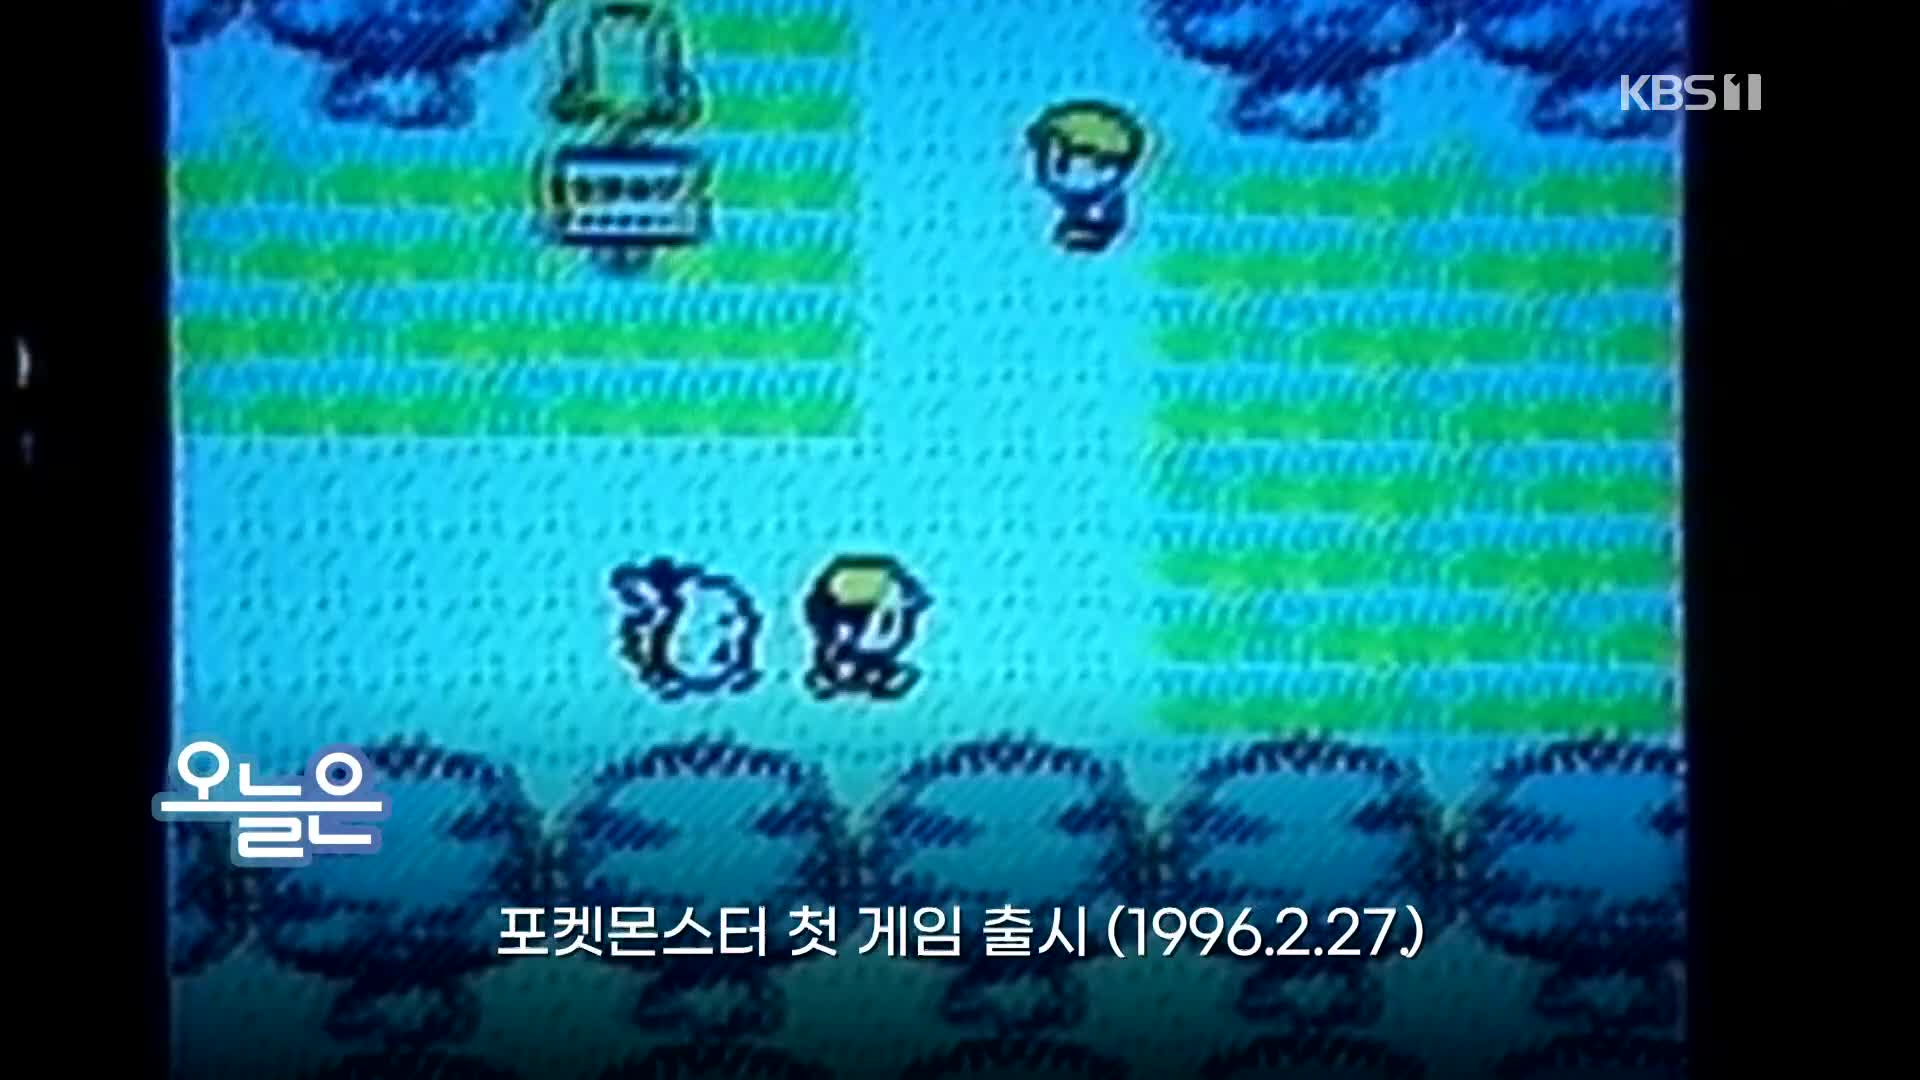 [오늘은] 포켓몬스터 첫 게임 출시 (1996.2.27.)